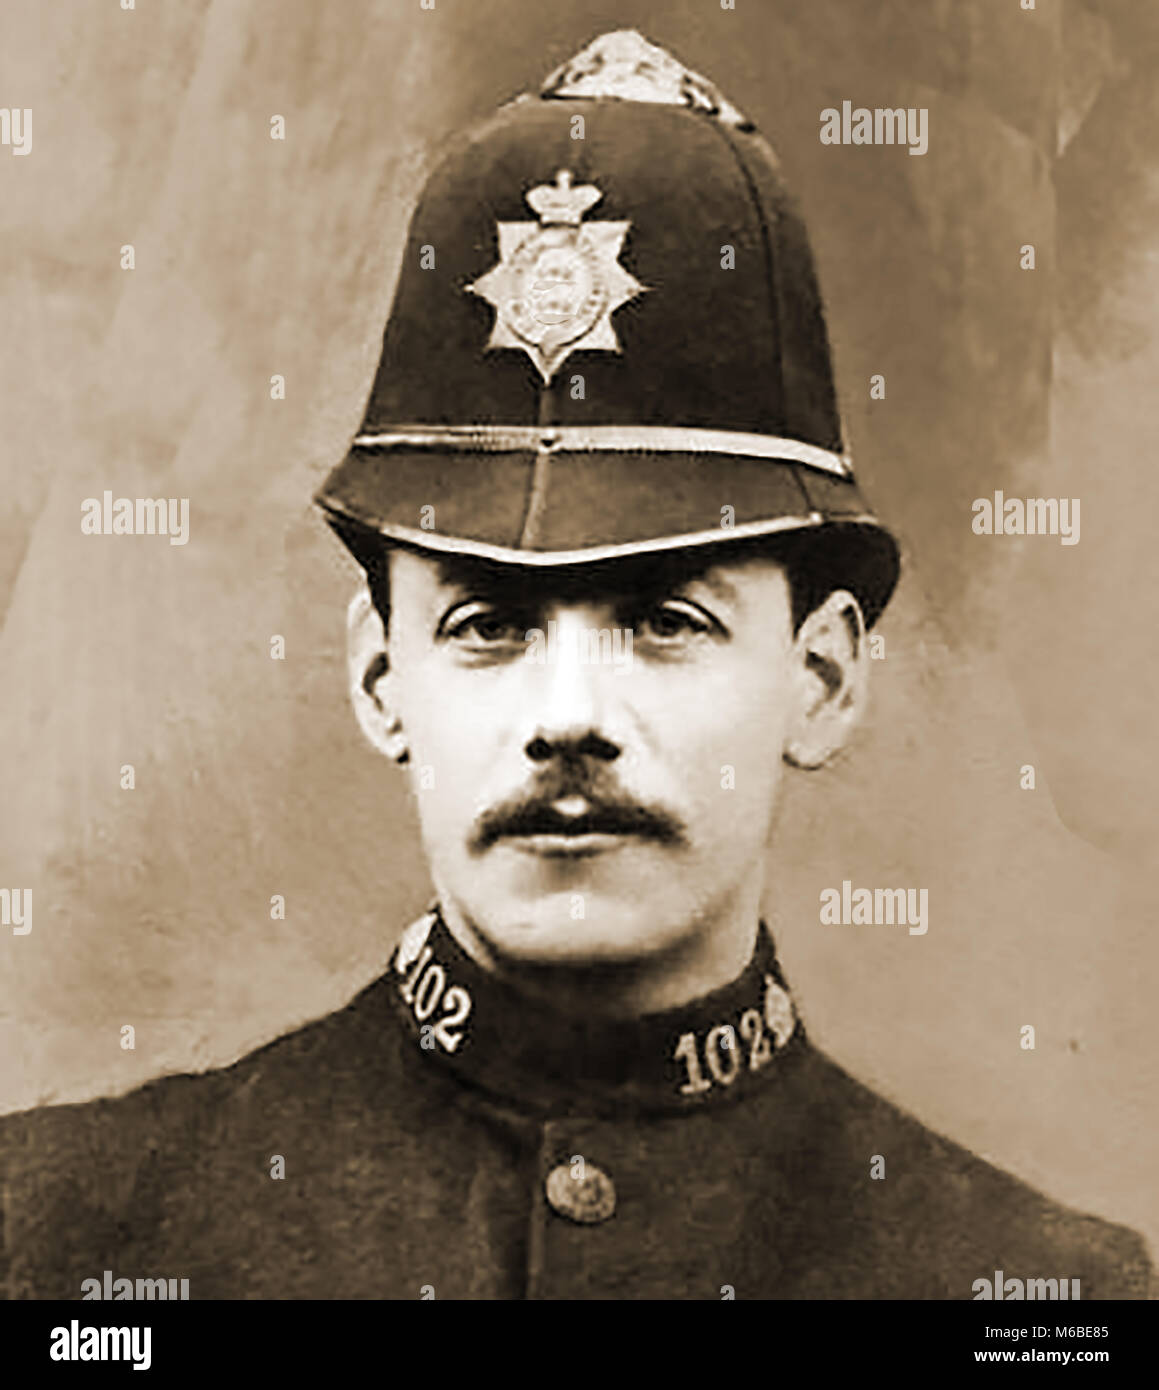 Matlock (Derbyshire UK) - Porträt der Polizei Polizist Wright ein Nicht-Schwimmer, die vom 27. März 1911 starb, 35 versucht, Sylvia Gratton zu speichern, im Alter von 15 Jahren, die Schutz geflohen und sprang in einen Fluss im Alter. Beide ertrunken Stockfoto